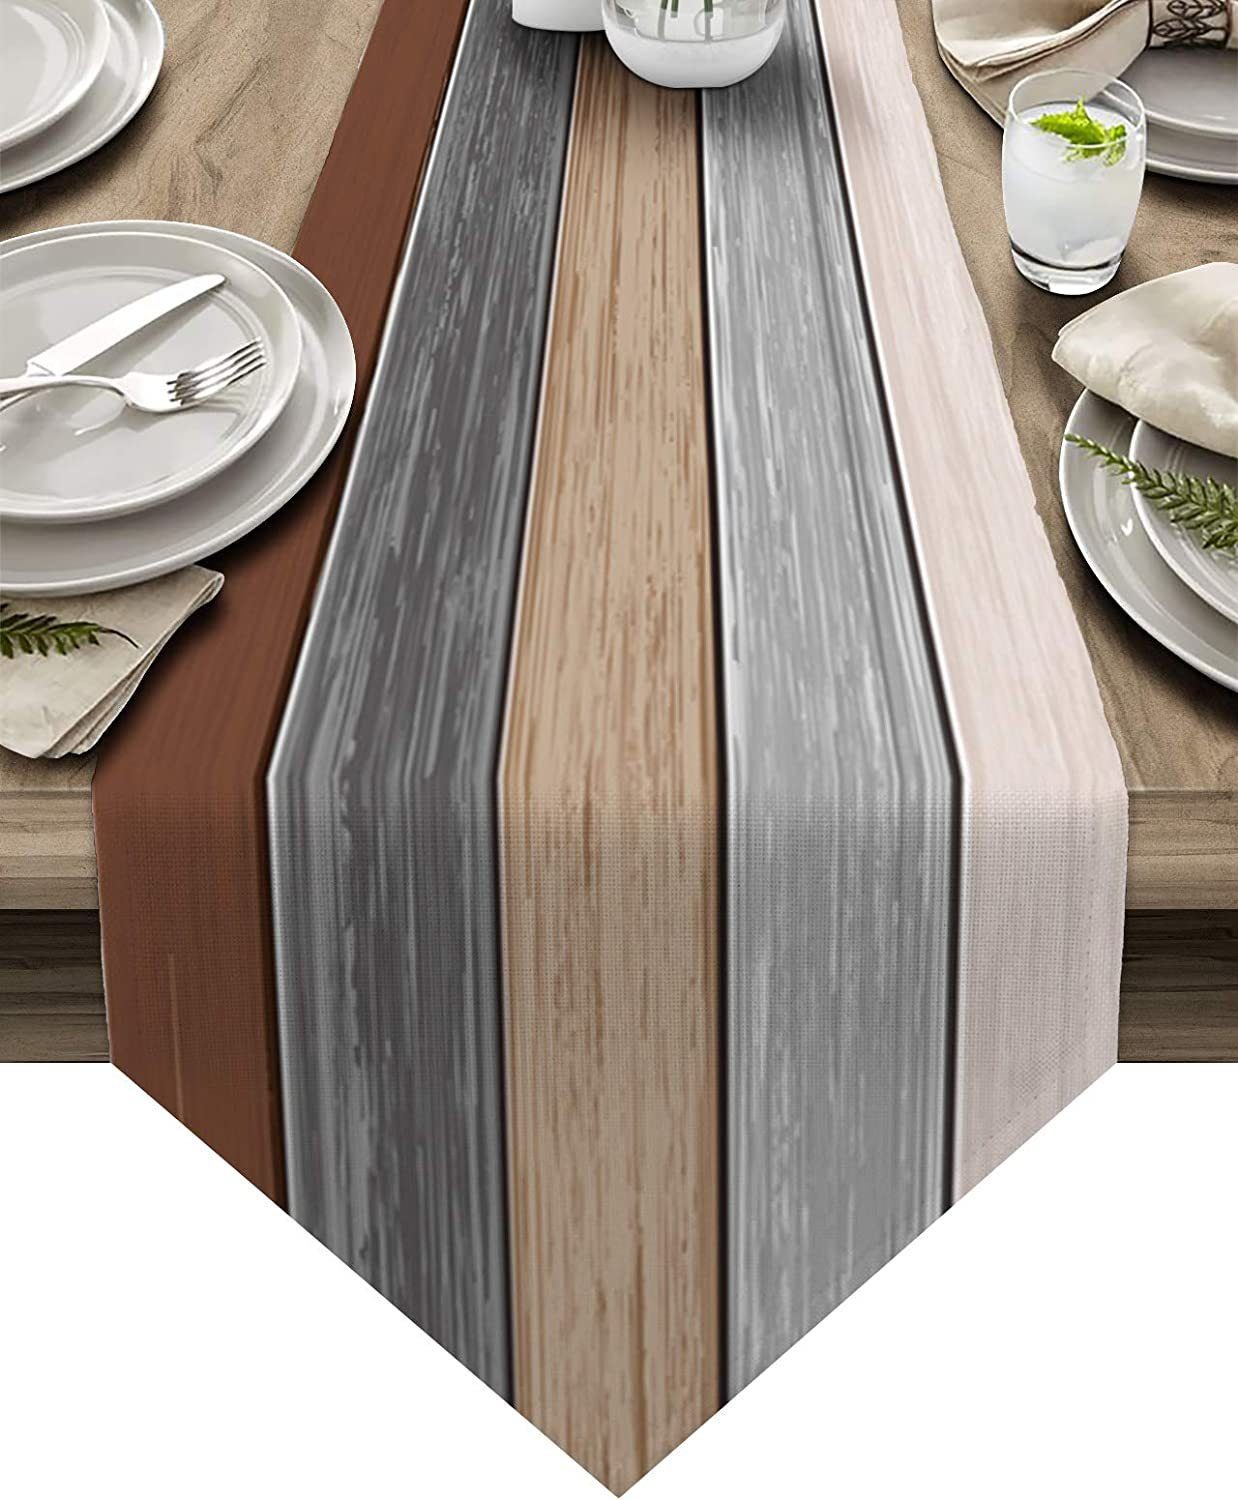 FELIXLEO Tischläufer Tischläufer Modern Rustikal Gestreift Holz Textur Tischläufer33x180cm